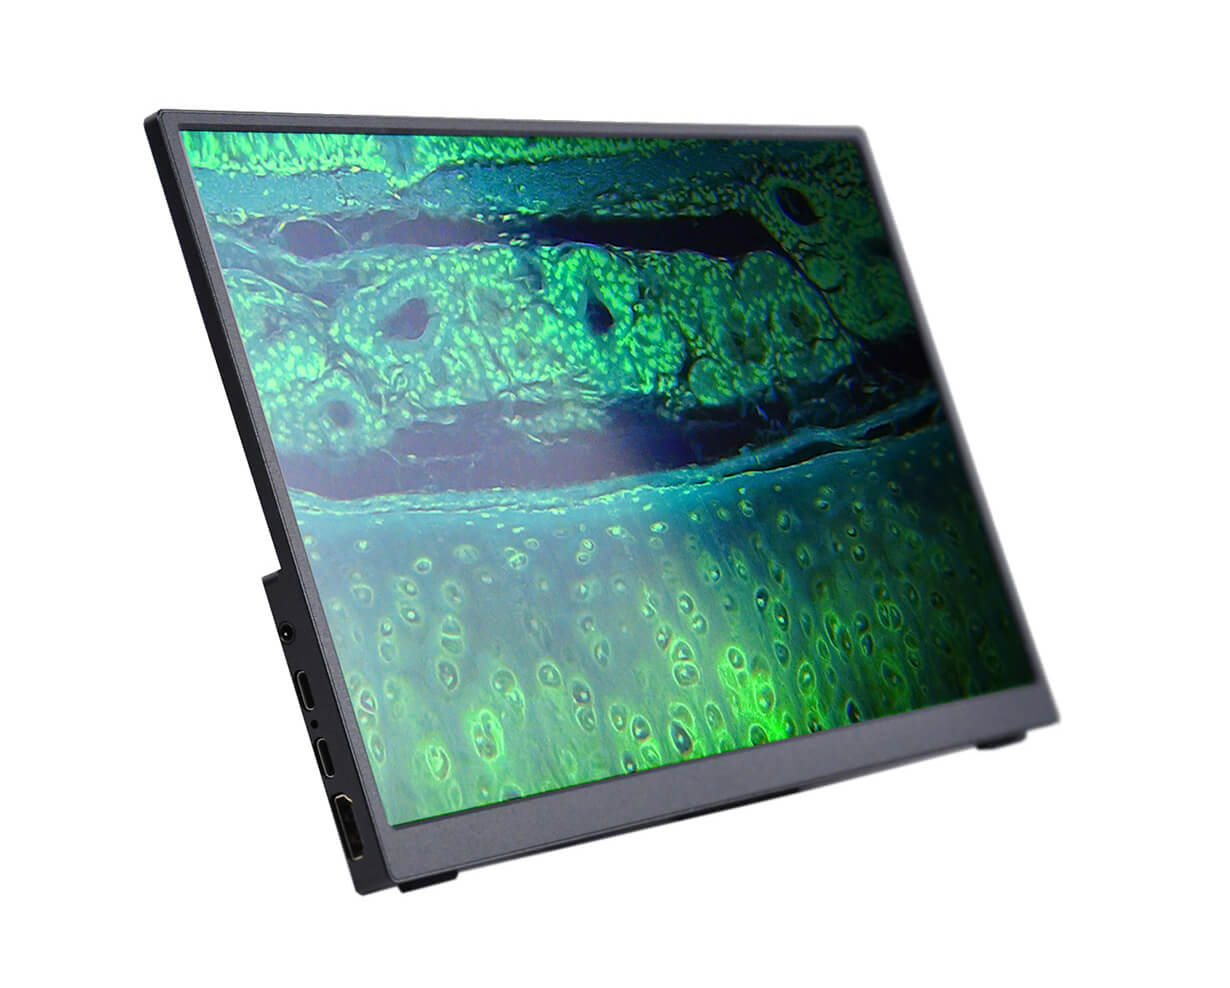 Inverzný, biologický, digitálny mikroskop MAGUS Bio VD350 LCD monitor LCD